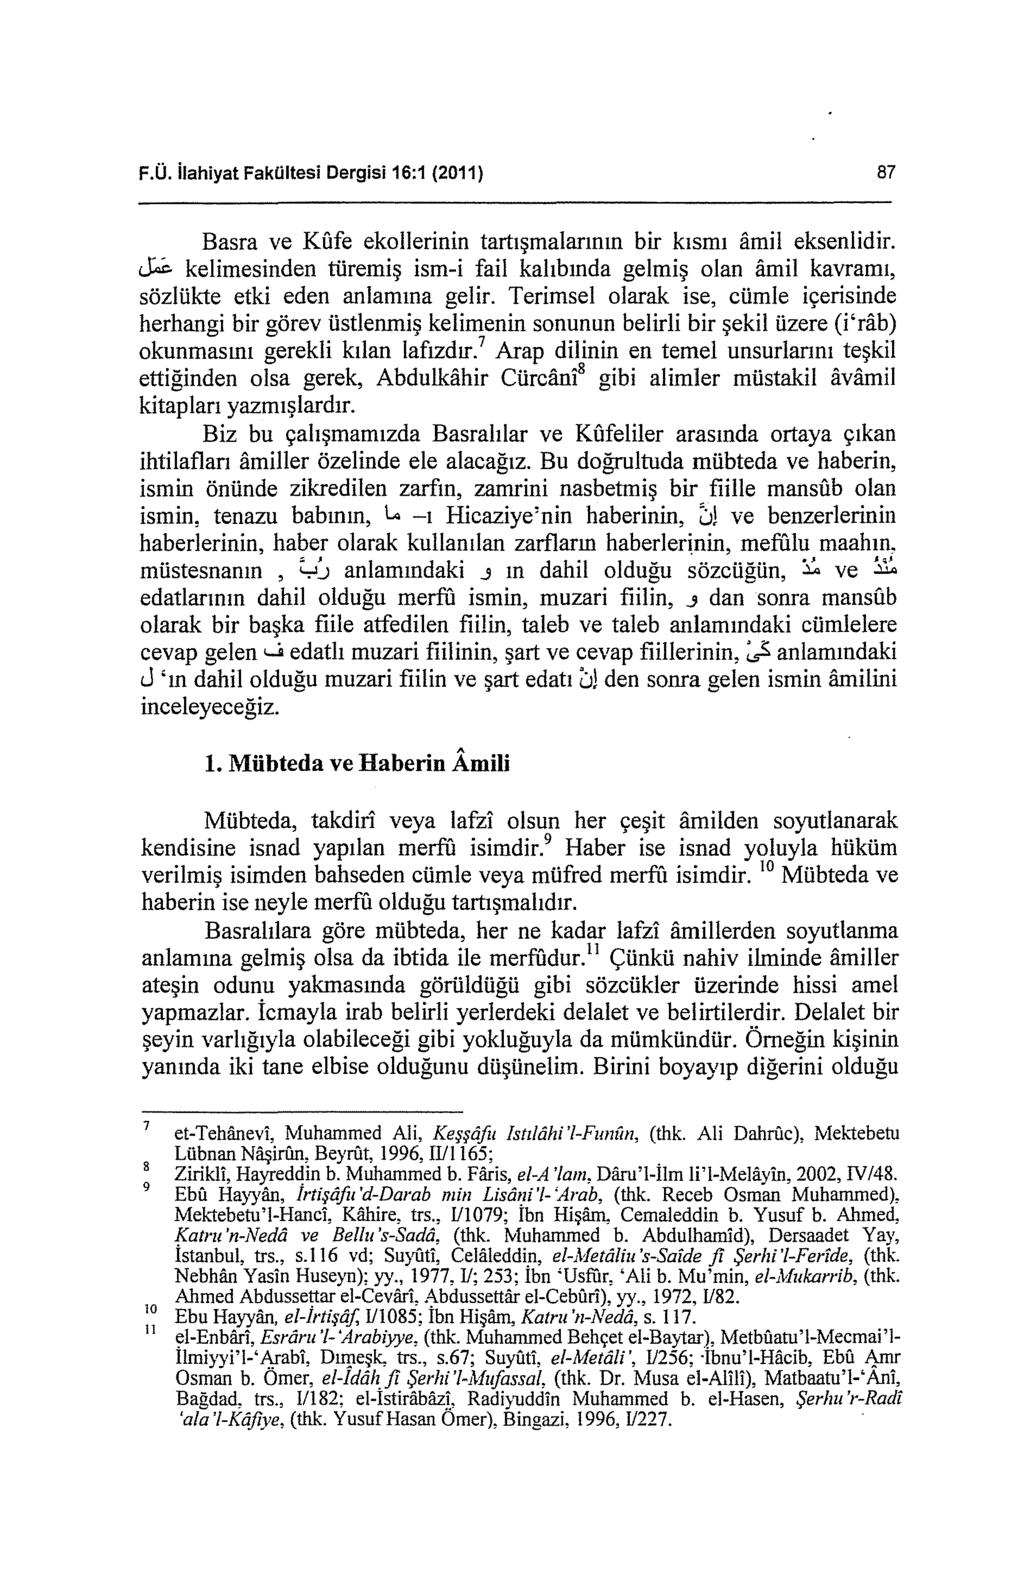 F.Ü. ilahiyat Fakültesi Dergisi 16:1 (2011) 87 Basra ve Kfıfe ekallerinin tartışmalarının bir kısmı amil eksenlidir.